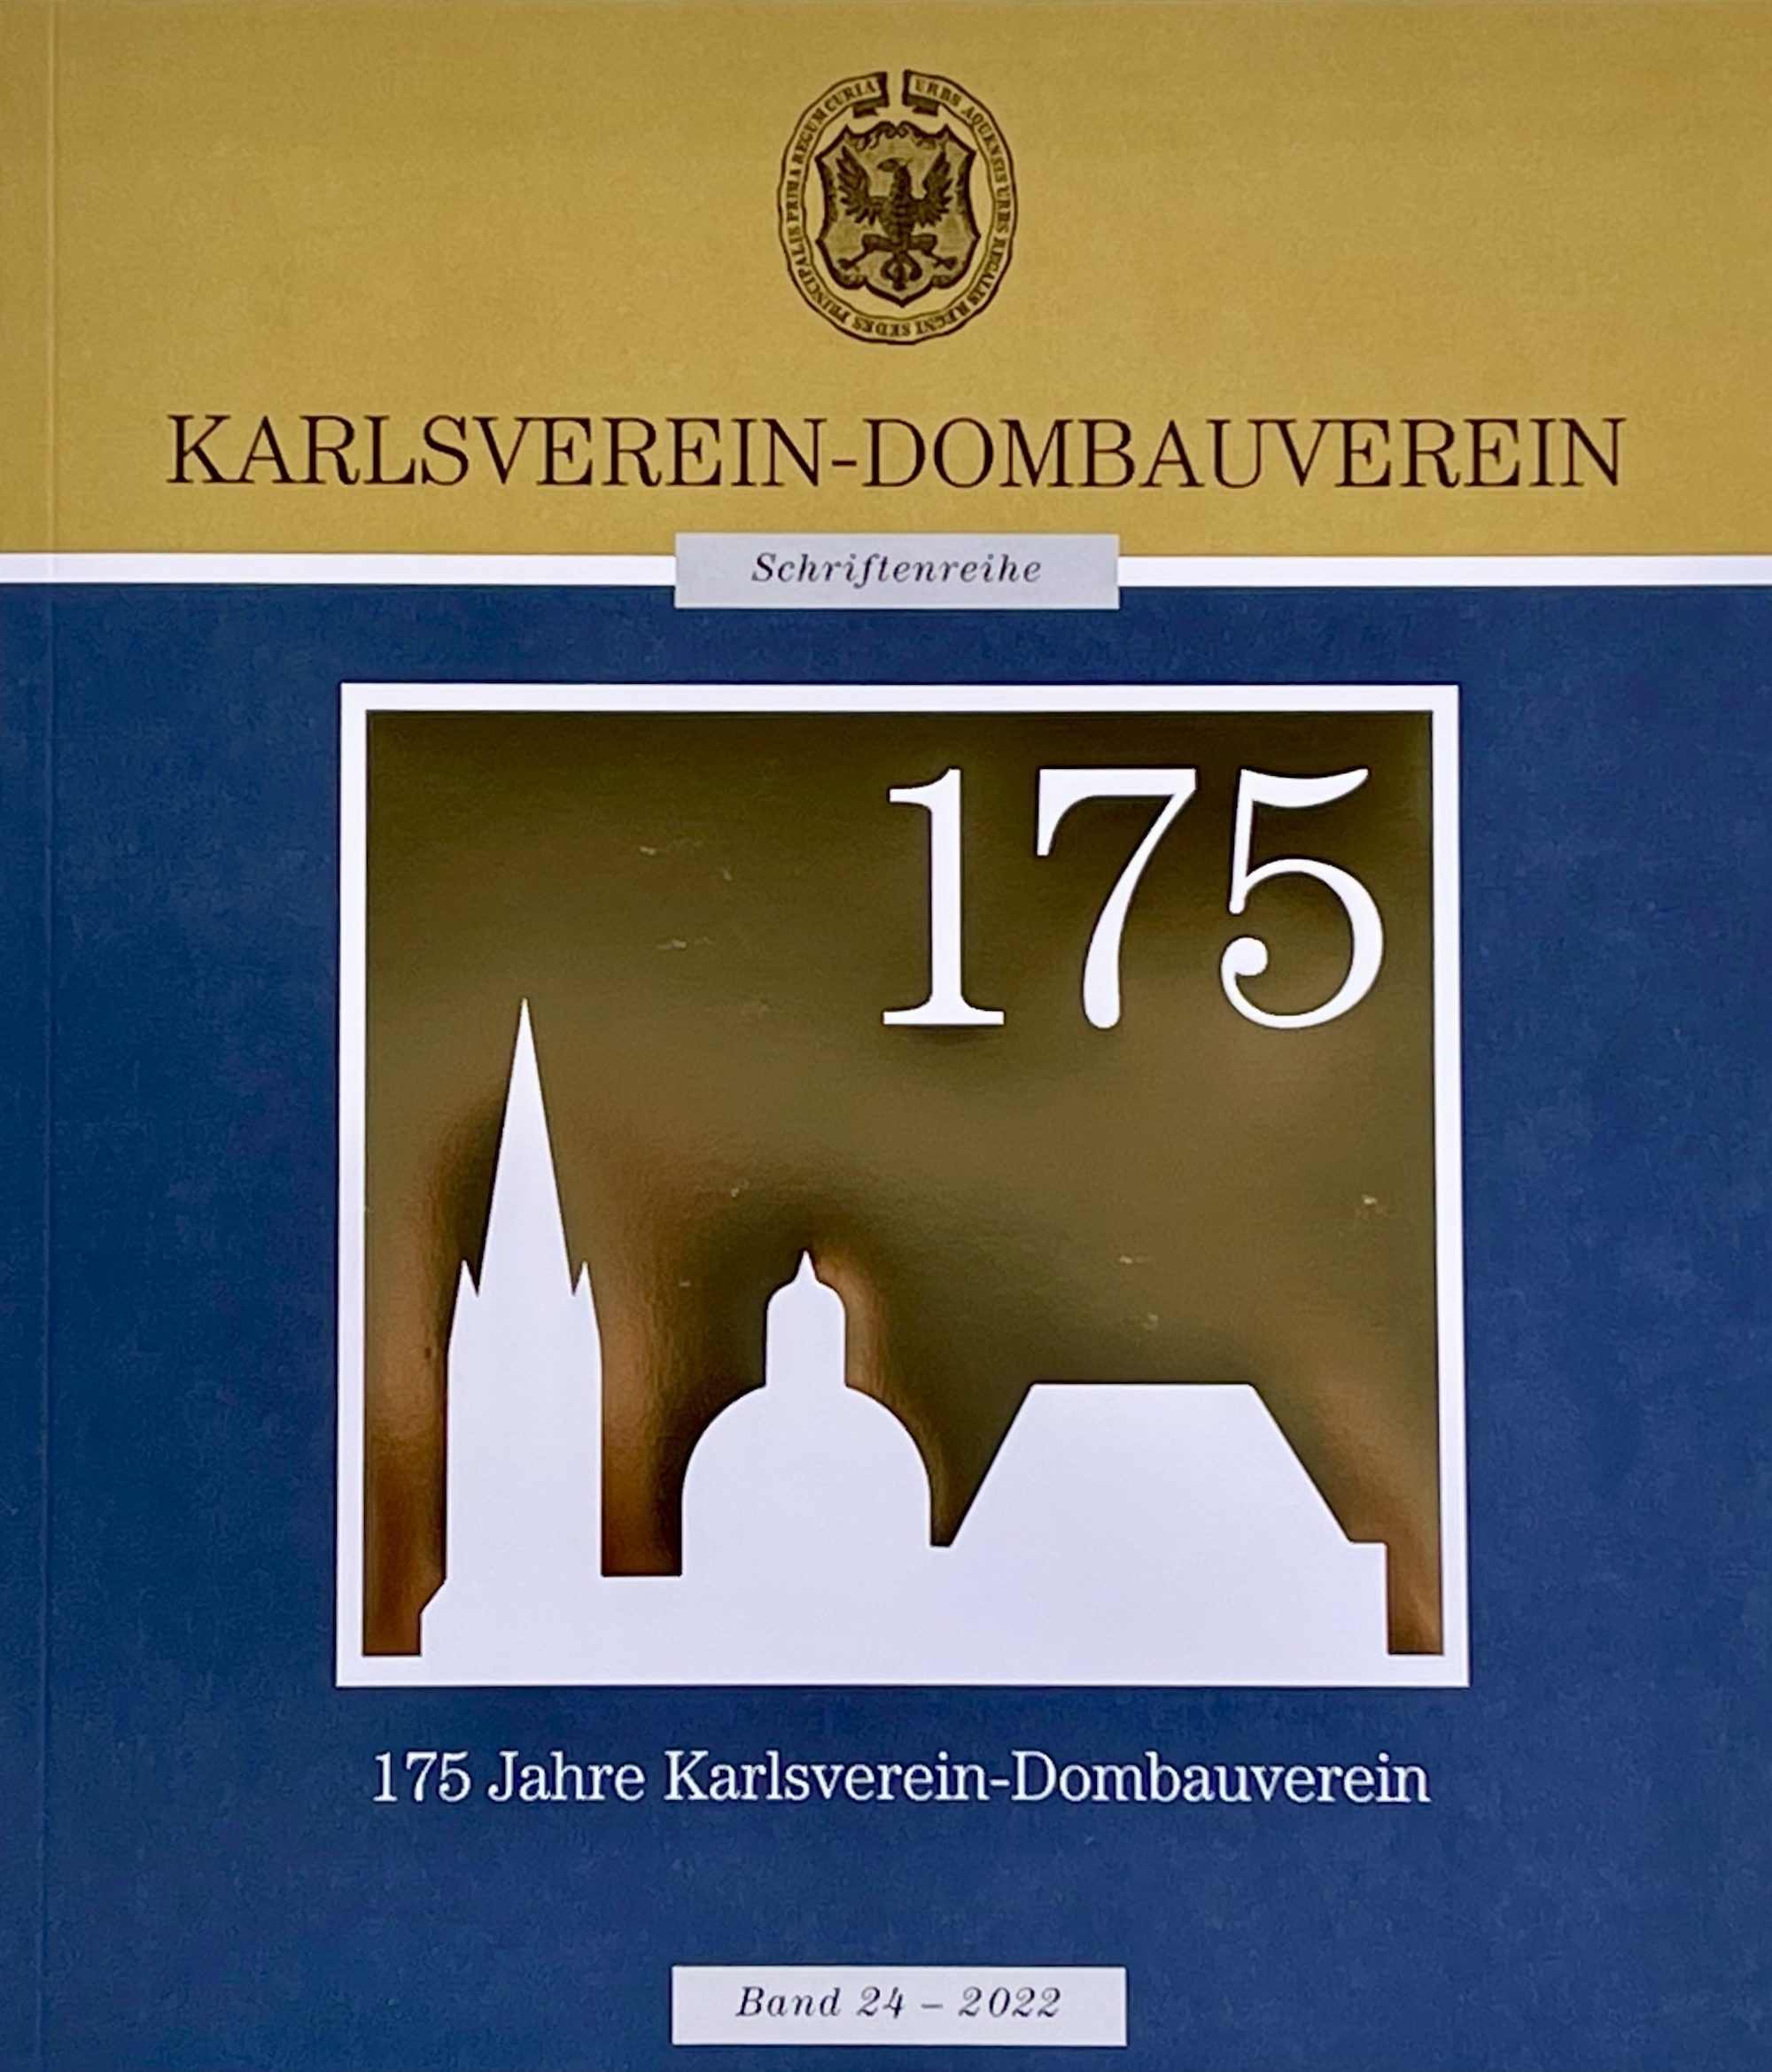 175 Jahre Karlsverein-Dombauverein in Wort und Bild